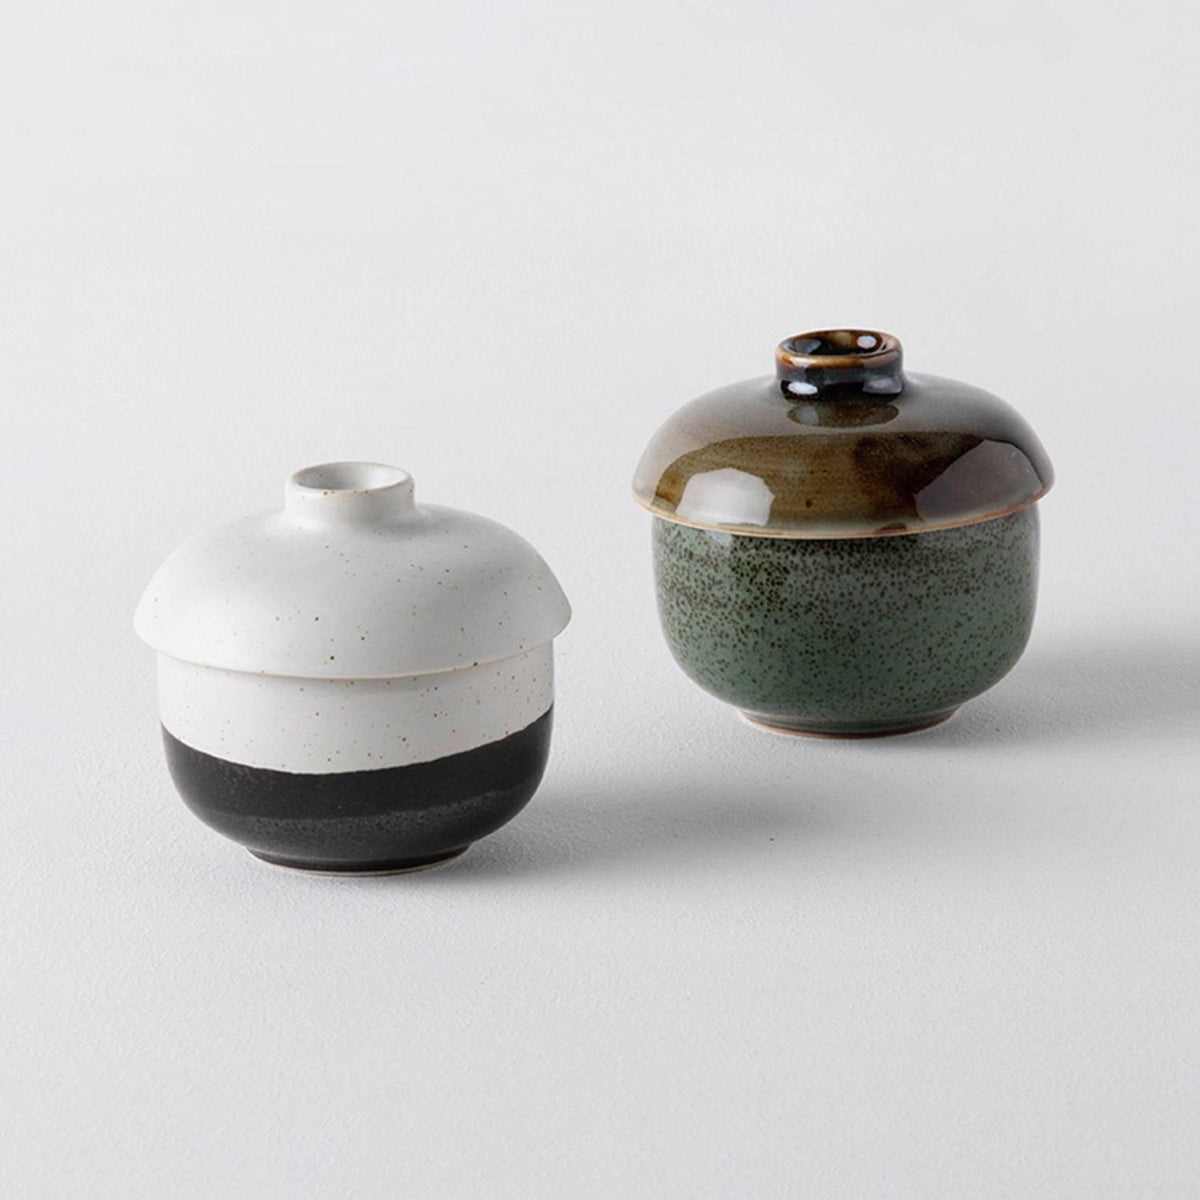 Euna - Ceramic Stew Pot With Lid – Eunaliving